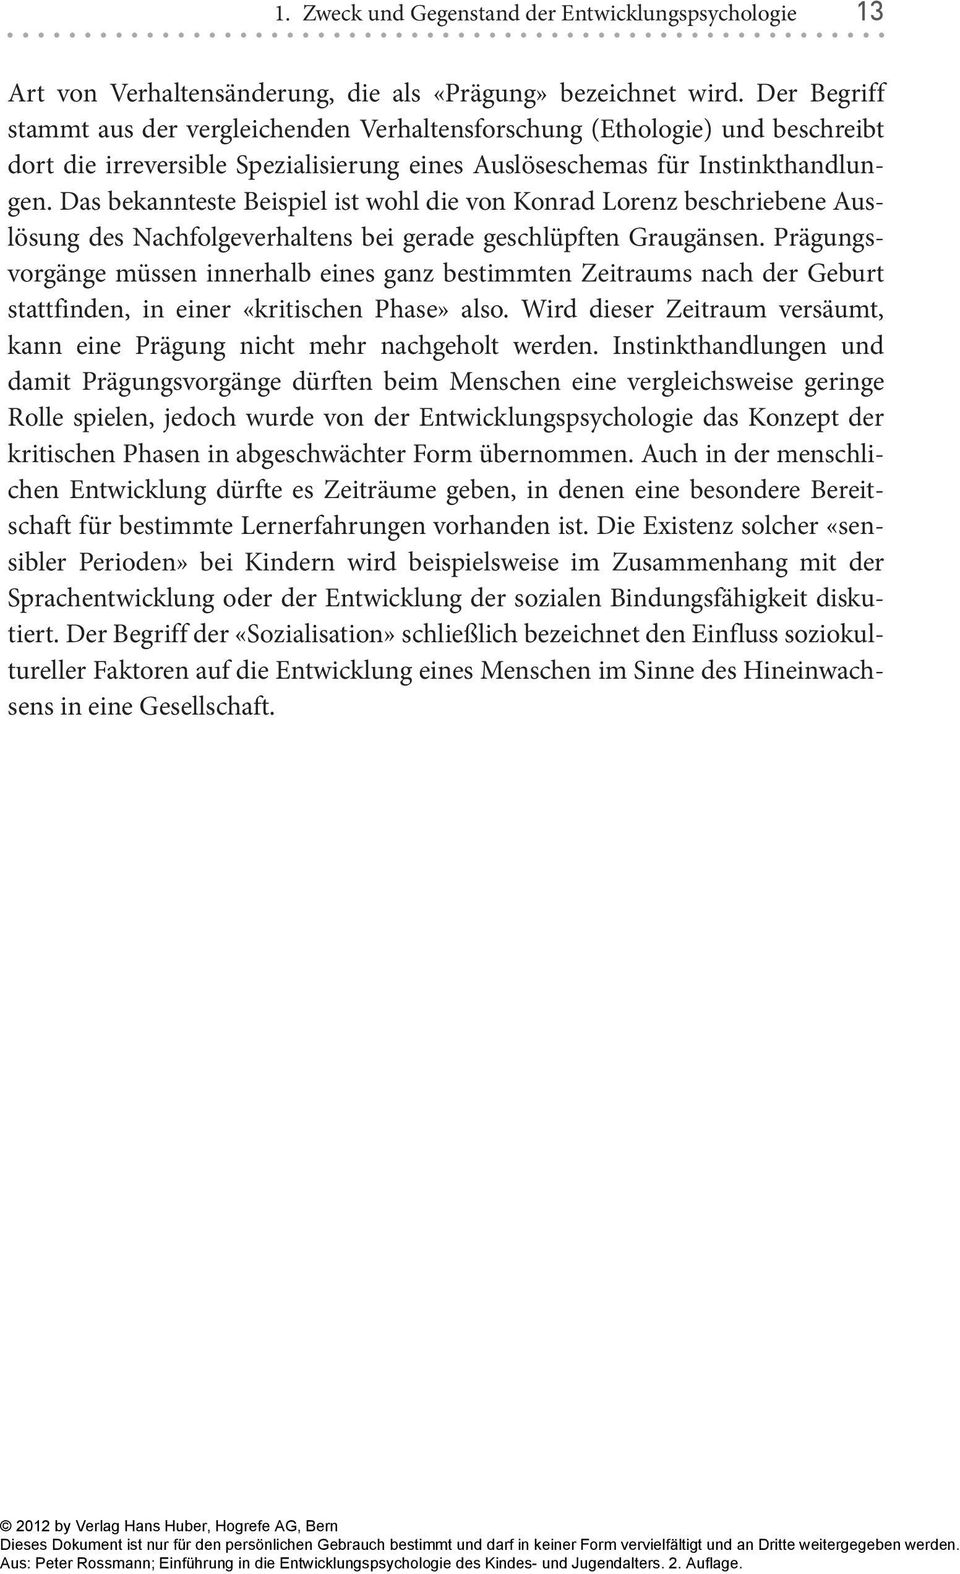 Das bekannteste Beispiel ist wohl die von Konrad Lorenz beschriebene Auslösung des Nachfolgeverhaltens bei gerade geschlüpften Graugänsen.